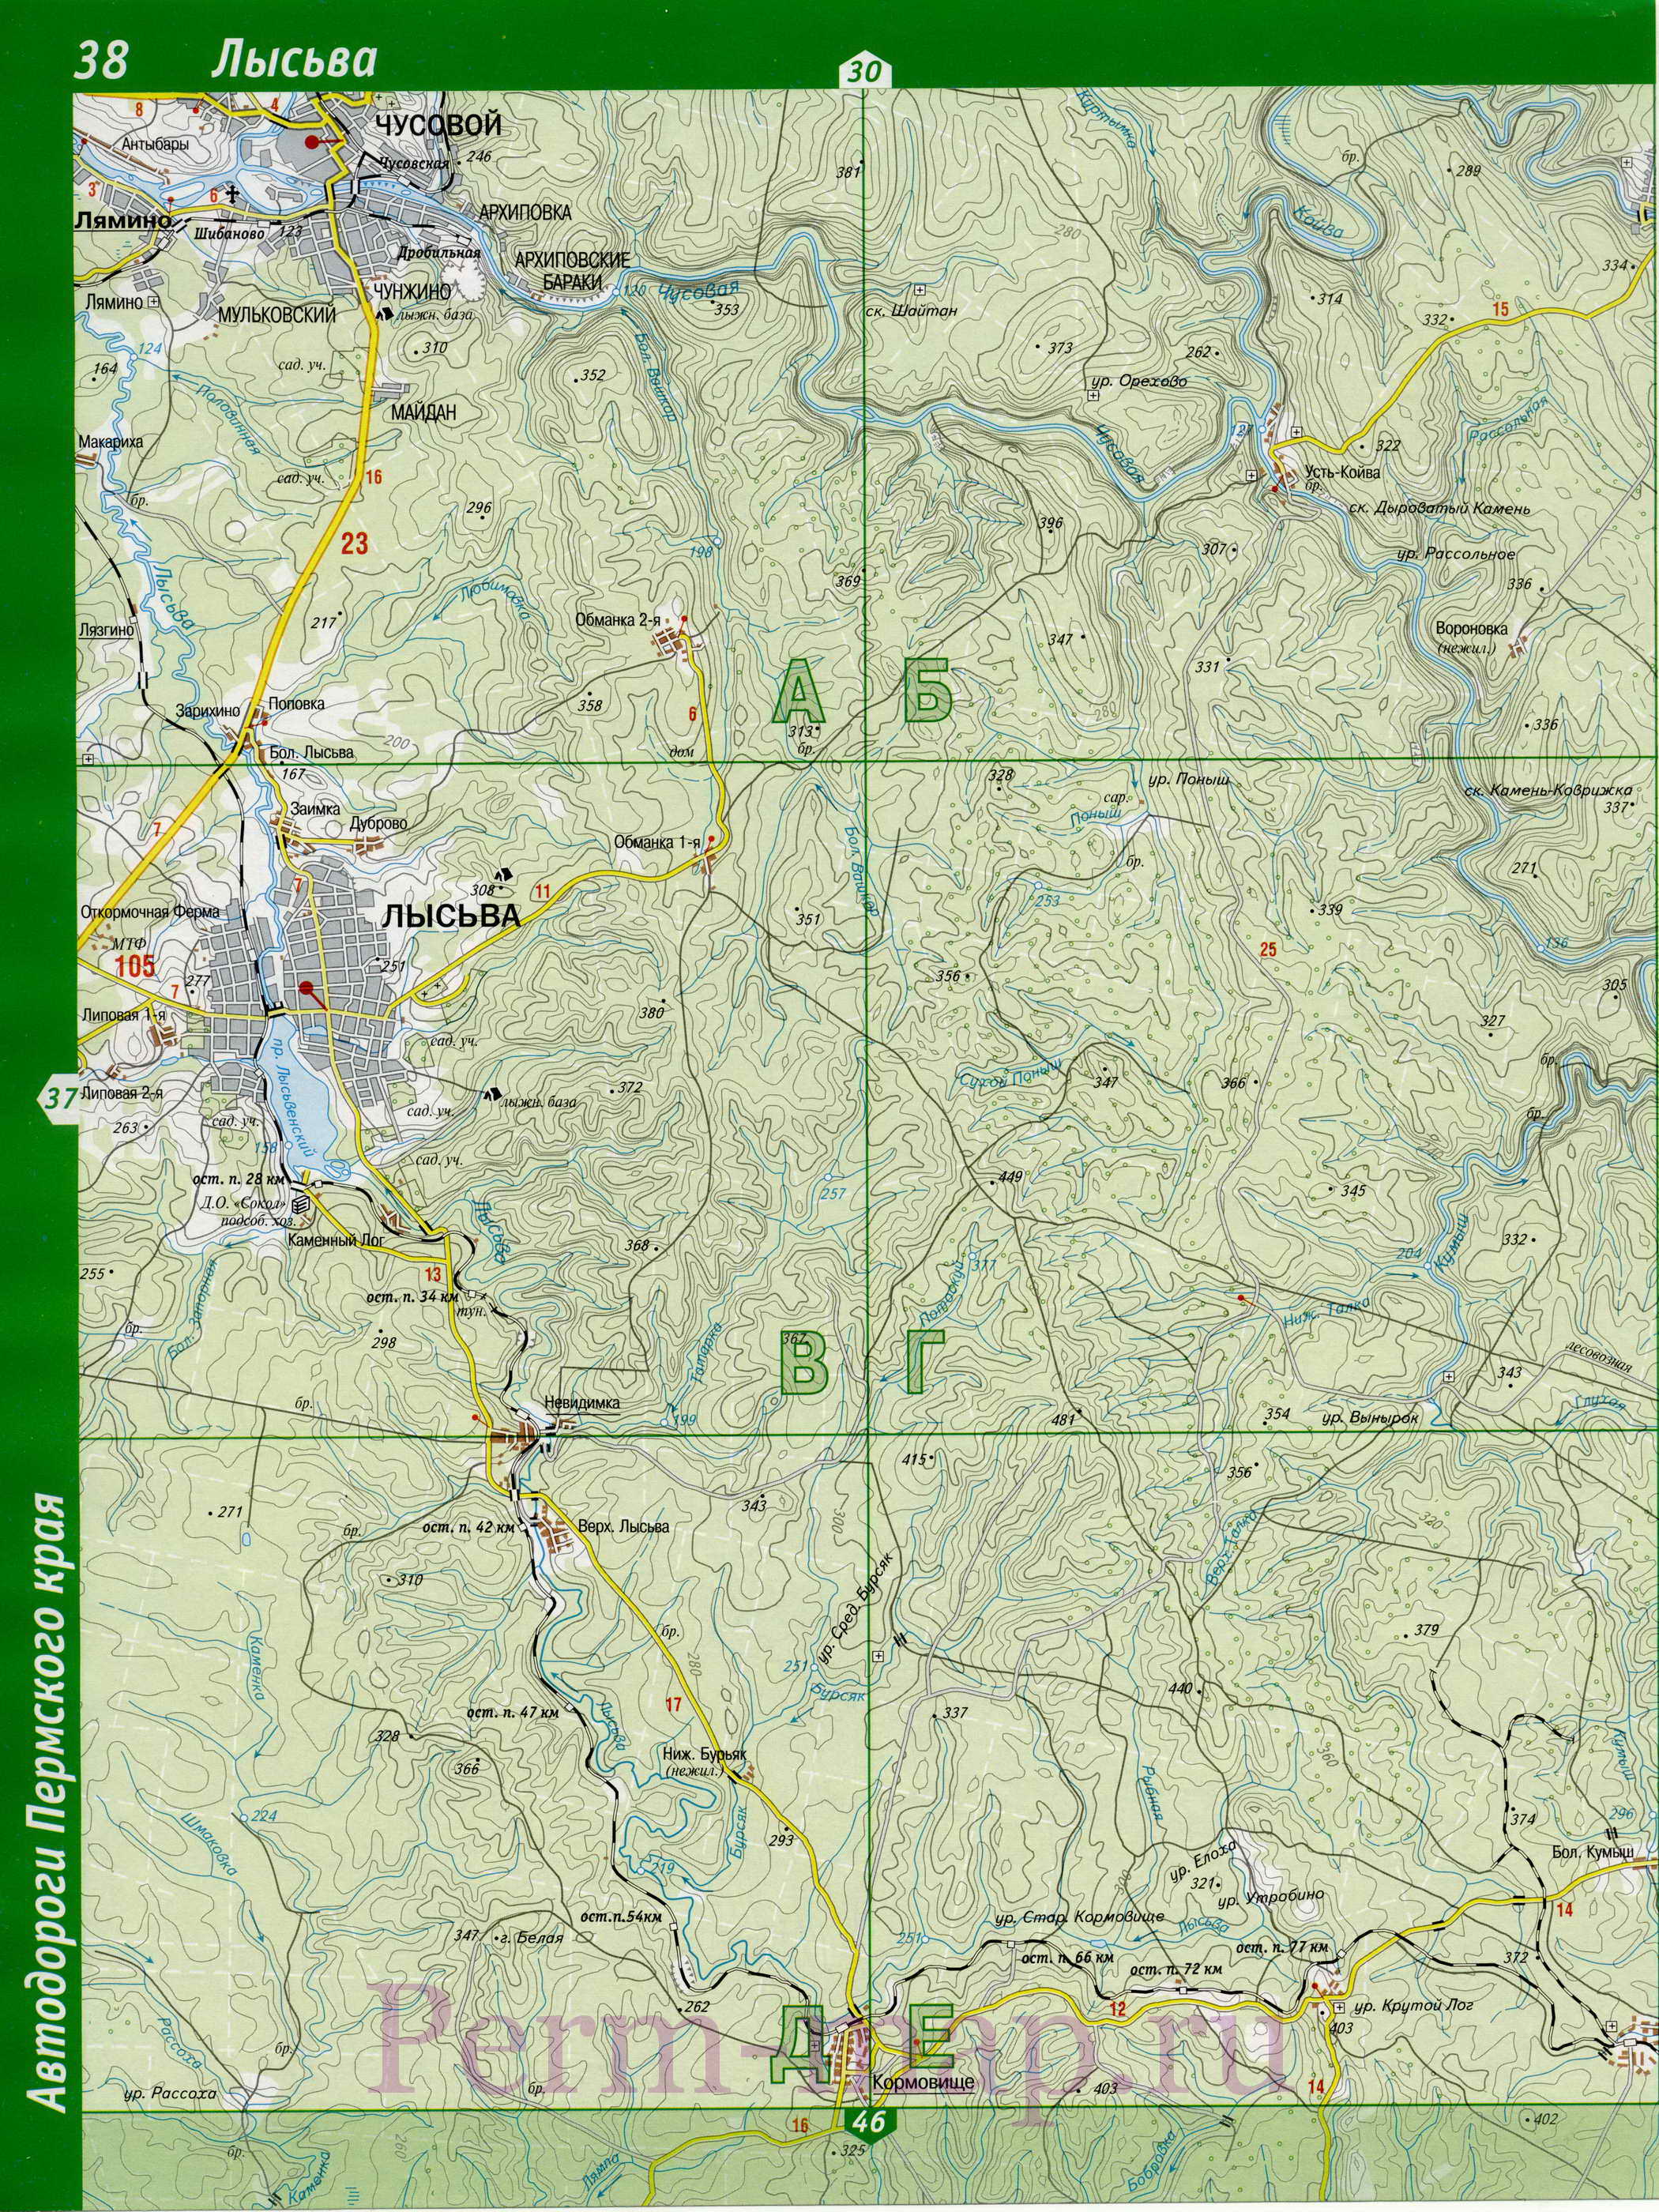 Лысьвенский район - топографическая карта. Подробная крупномасштабная карта Лысьвенского района, B0 - 